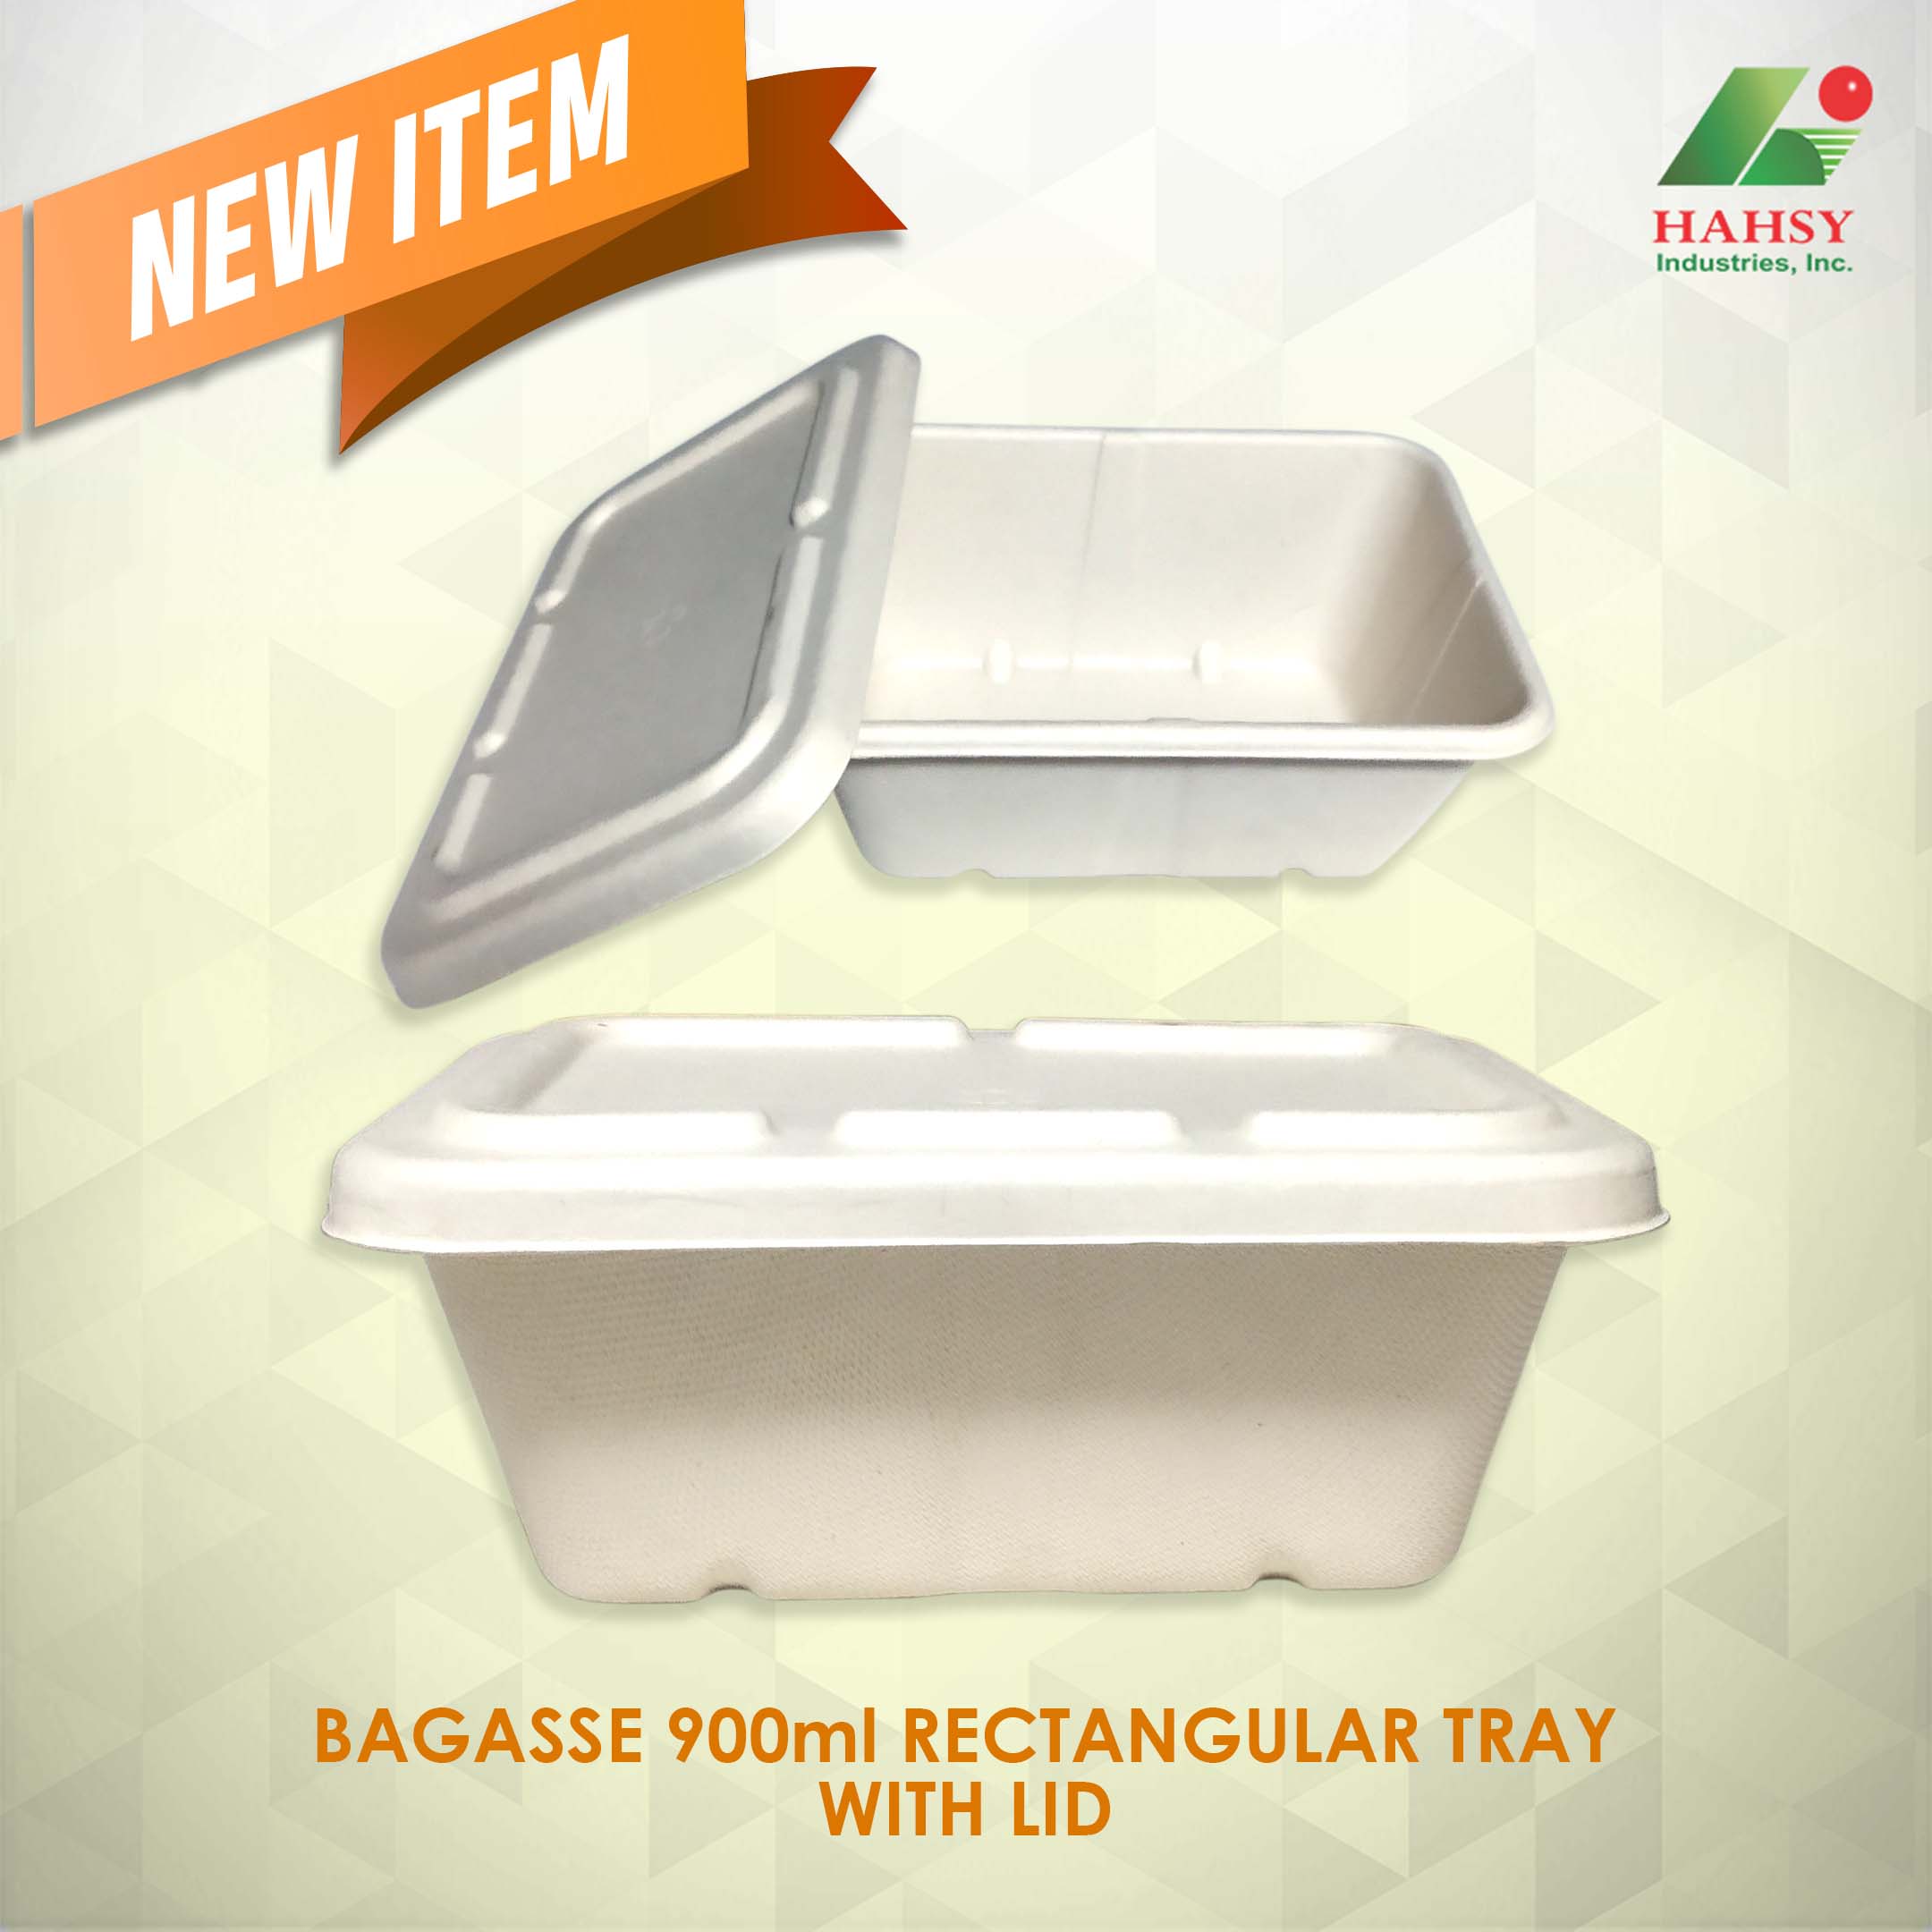 Sugarcane Bagasse 900ml rectangular tray with lid